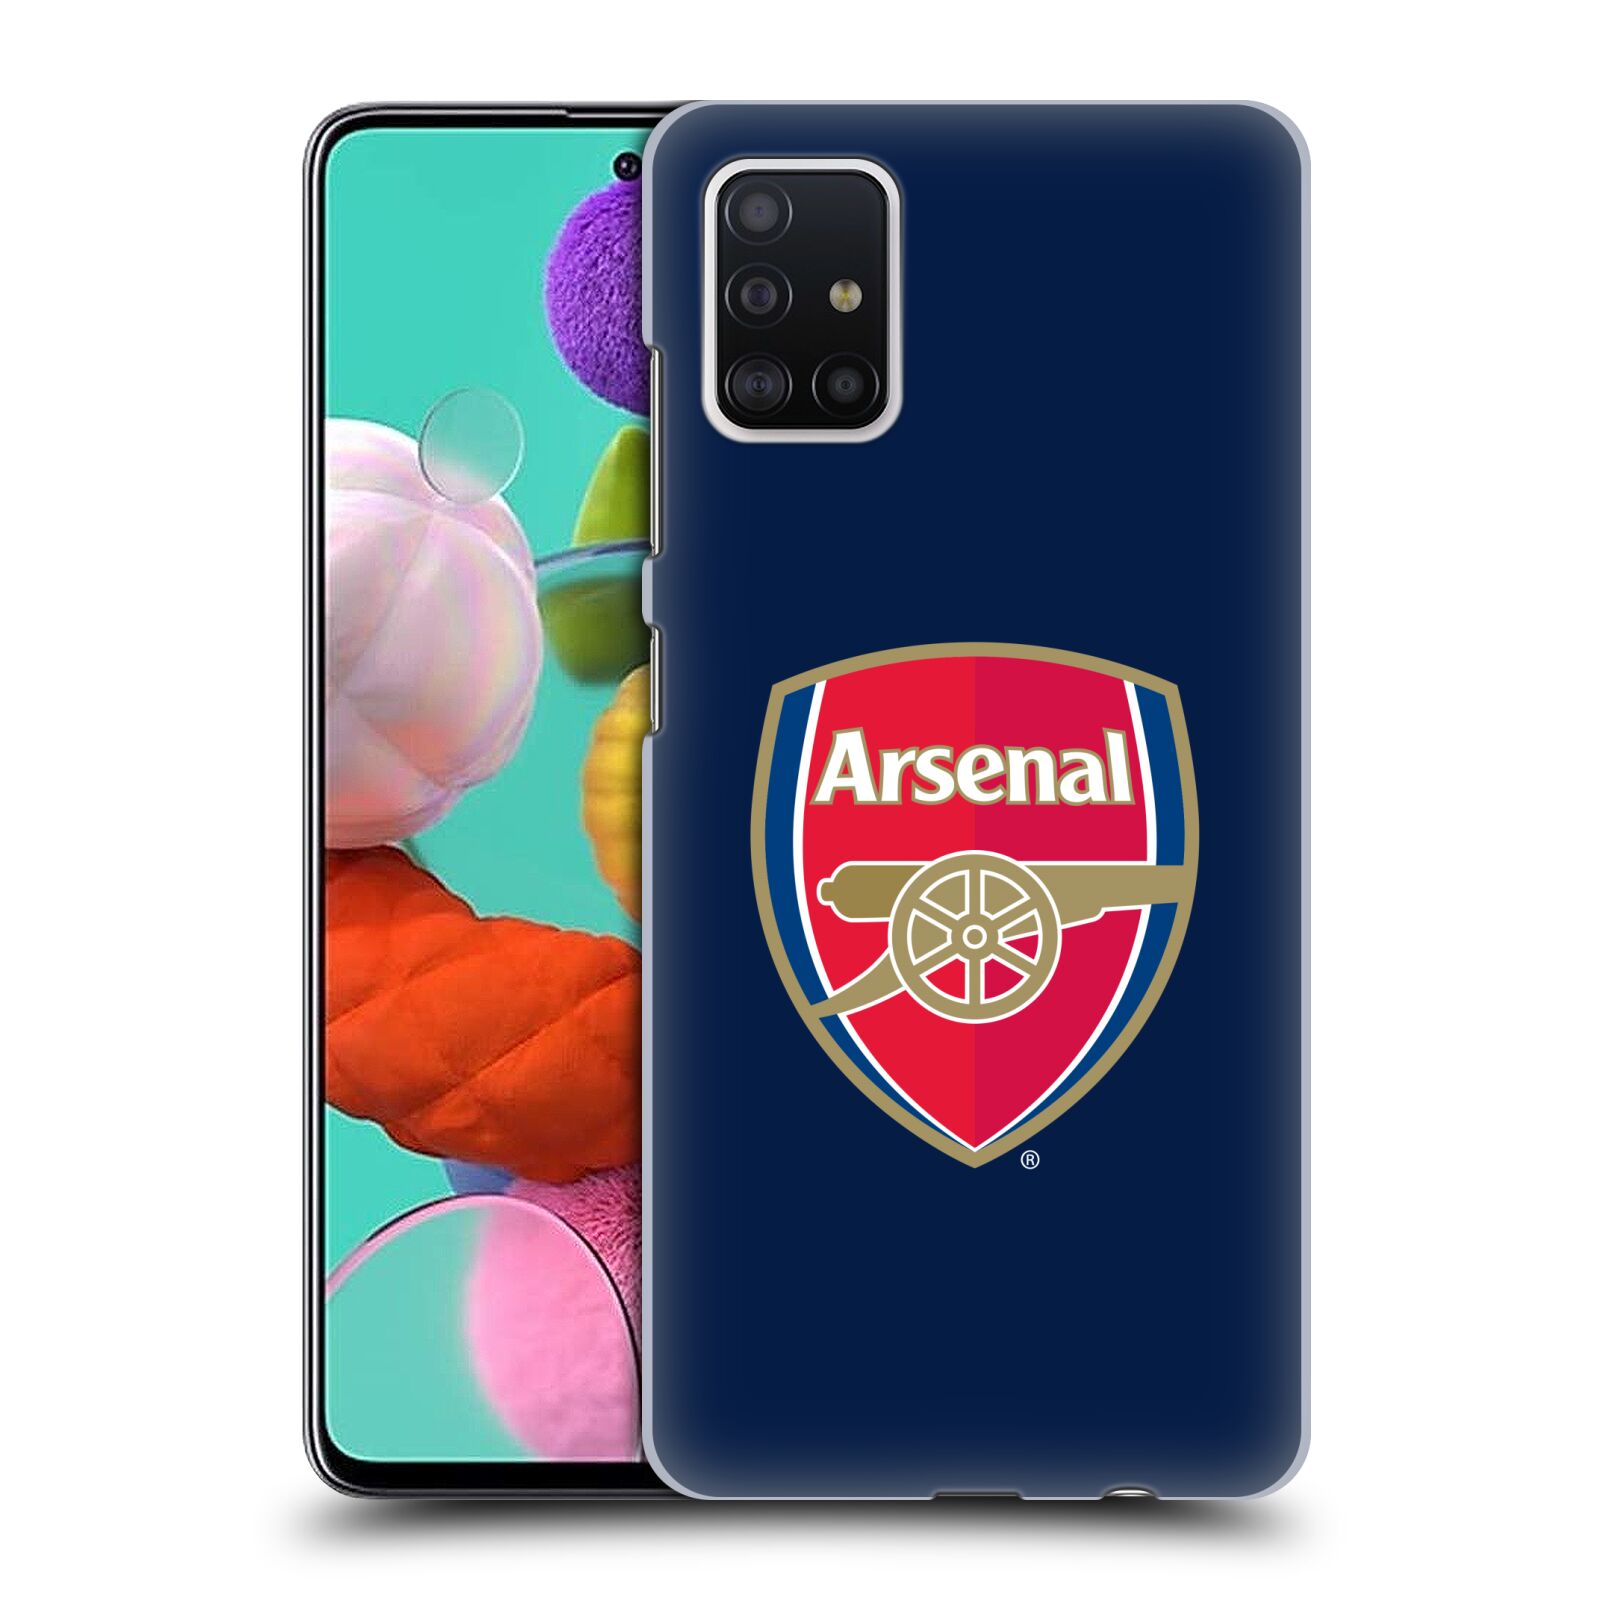 Pouzdro na mobil Samsung Galaxy A51 - HEAD CASE - Fotbalový klub Arsenal znak barevný modré pozadí